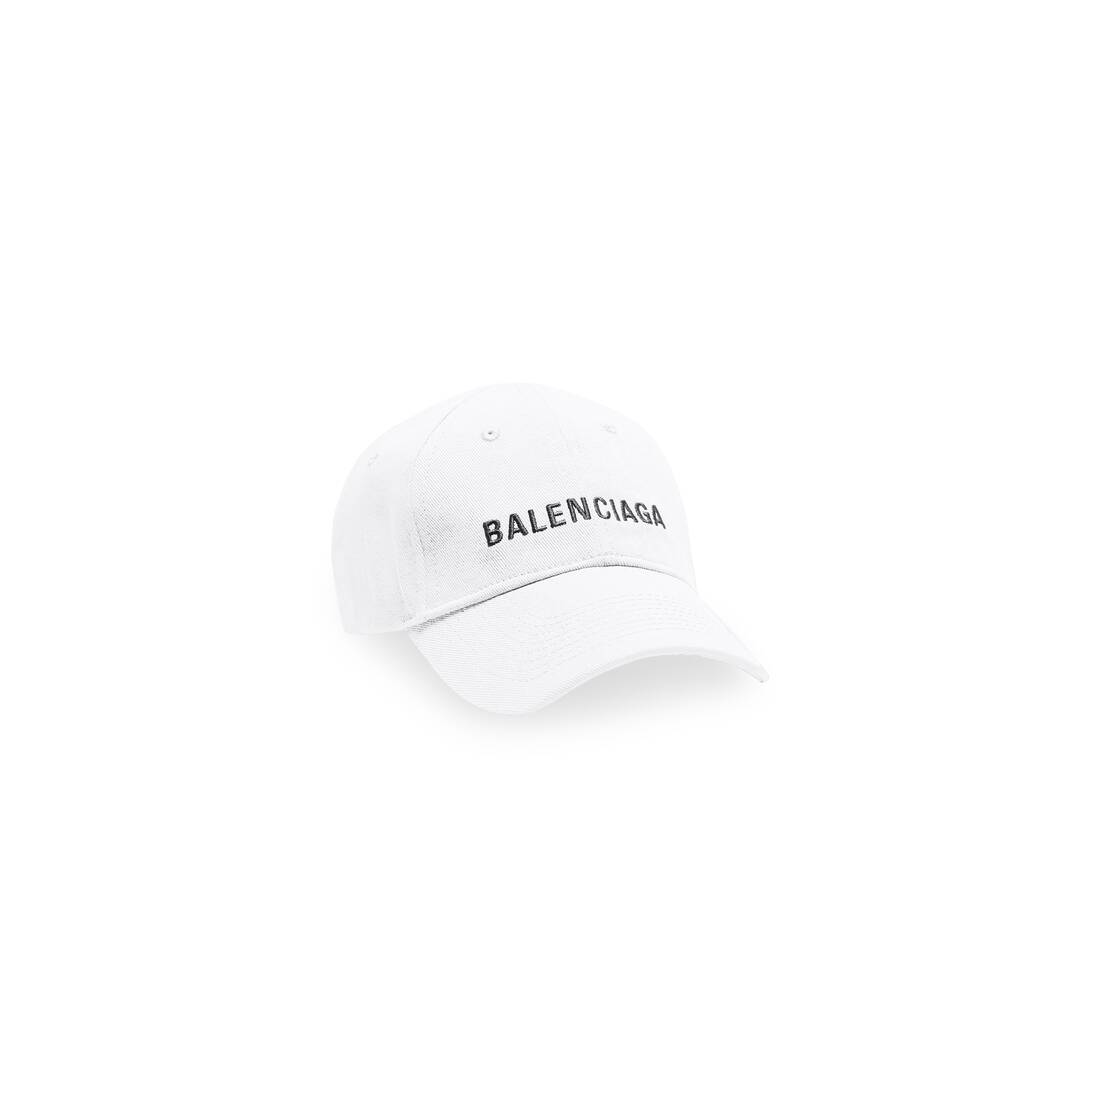 Balenciaga Cap in White/black | Balenciaga CA